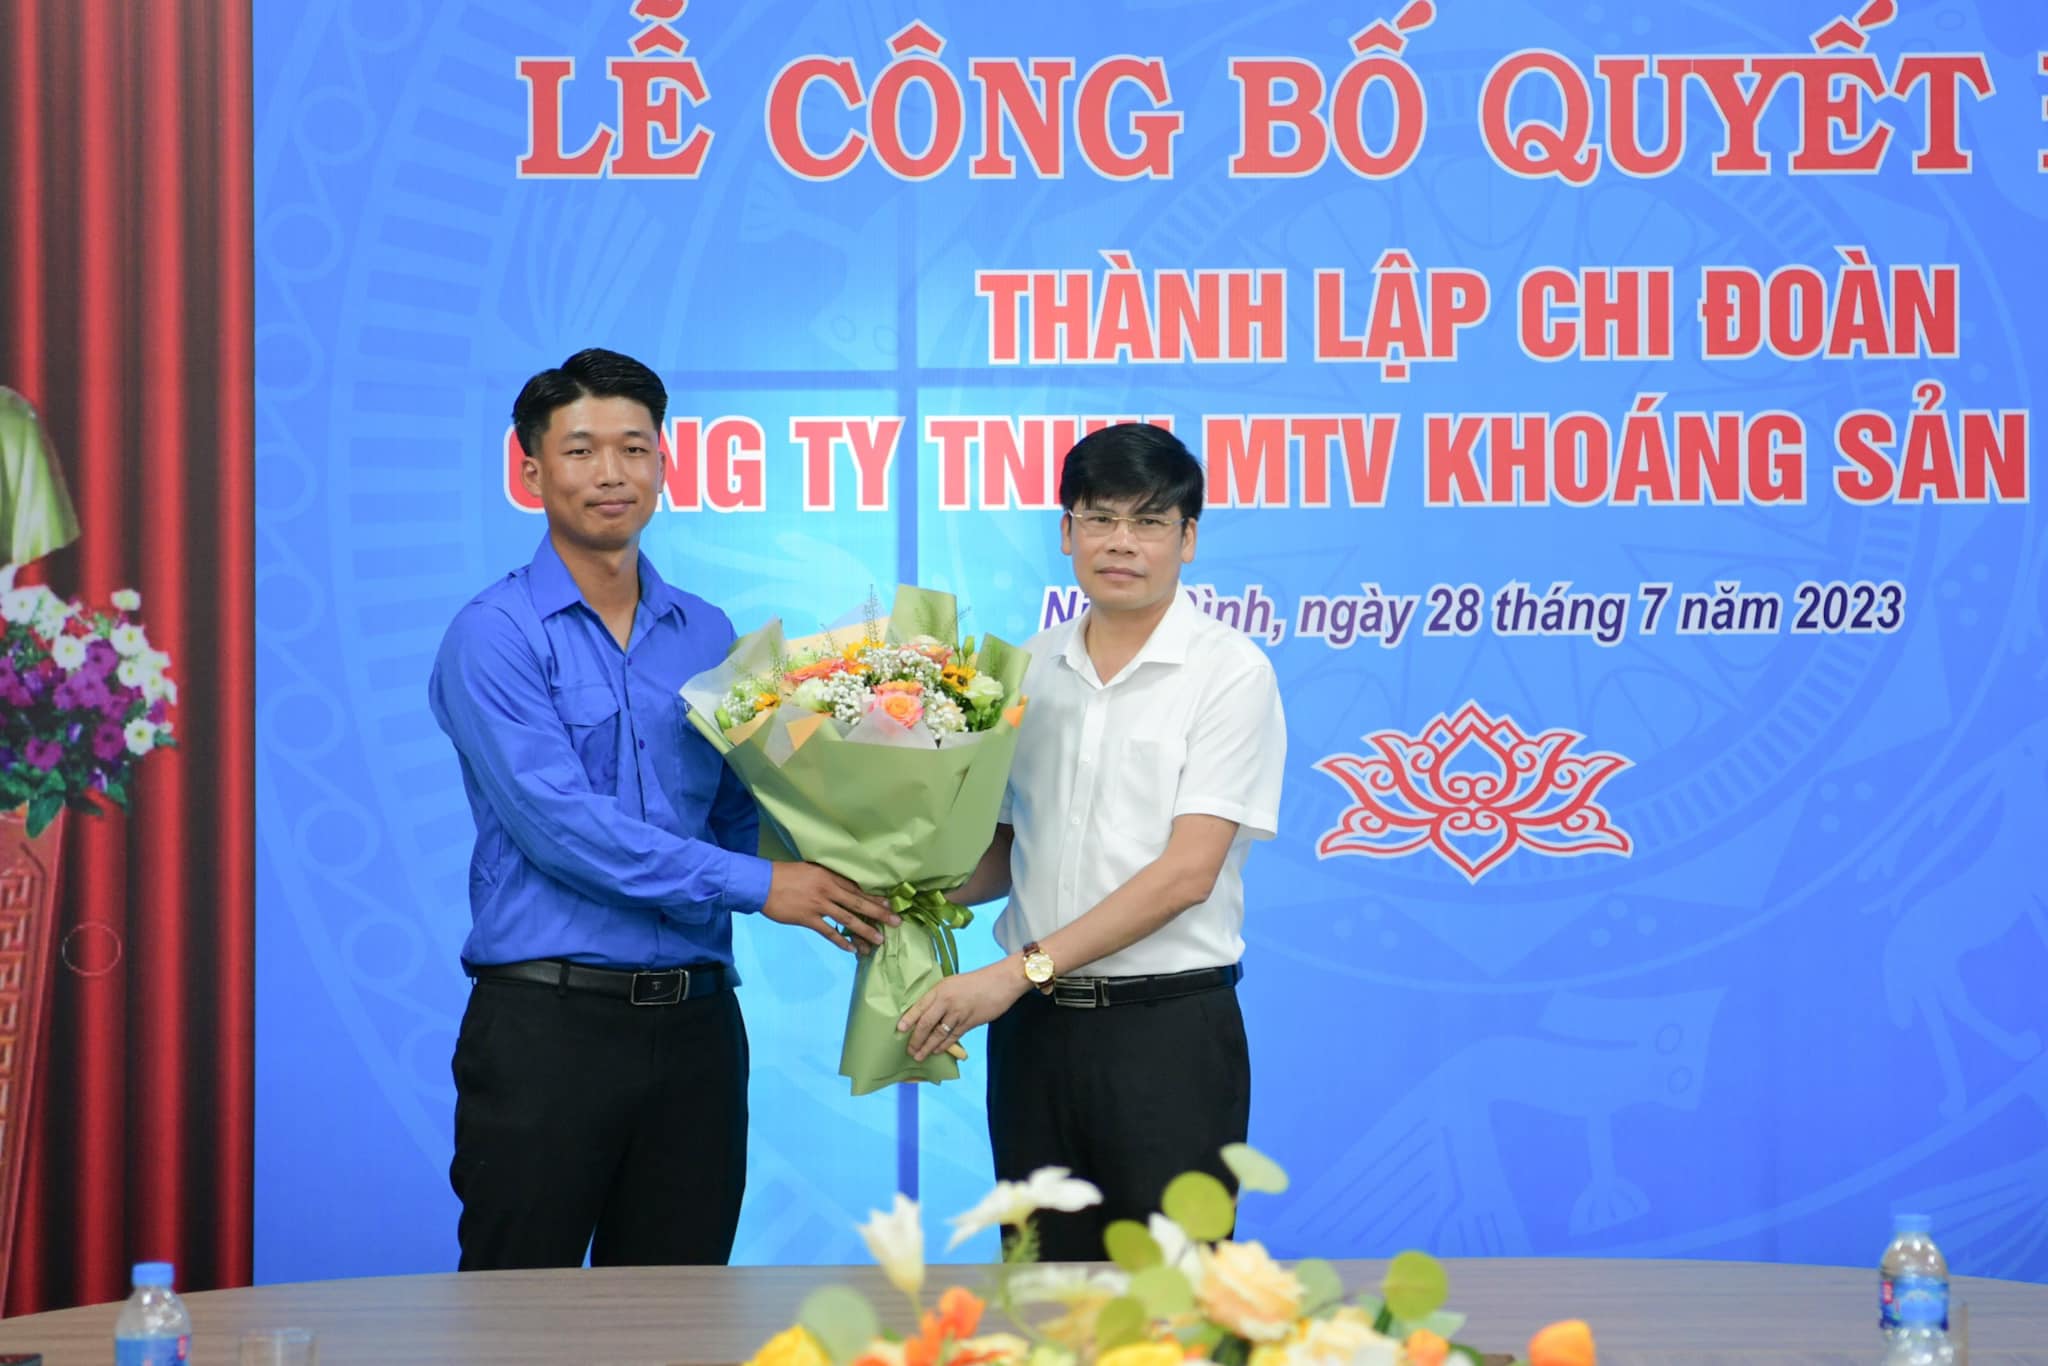 Lễ công bố quyết định thành lập Chi đoàn Công ty TNHH MTV Khoáng sản Vôi Việt